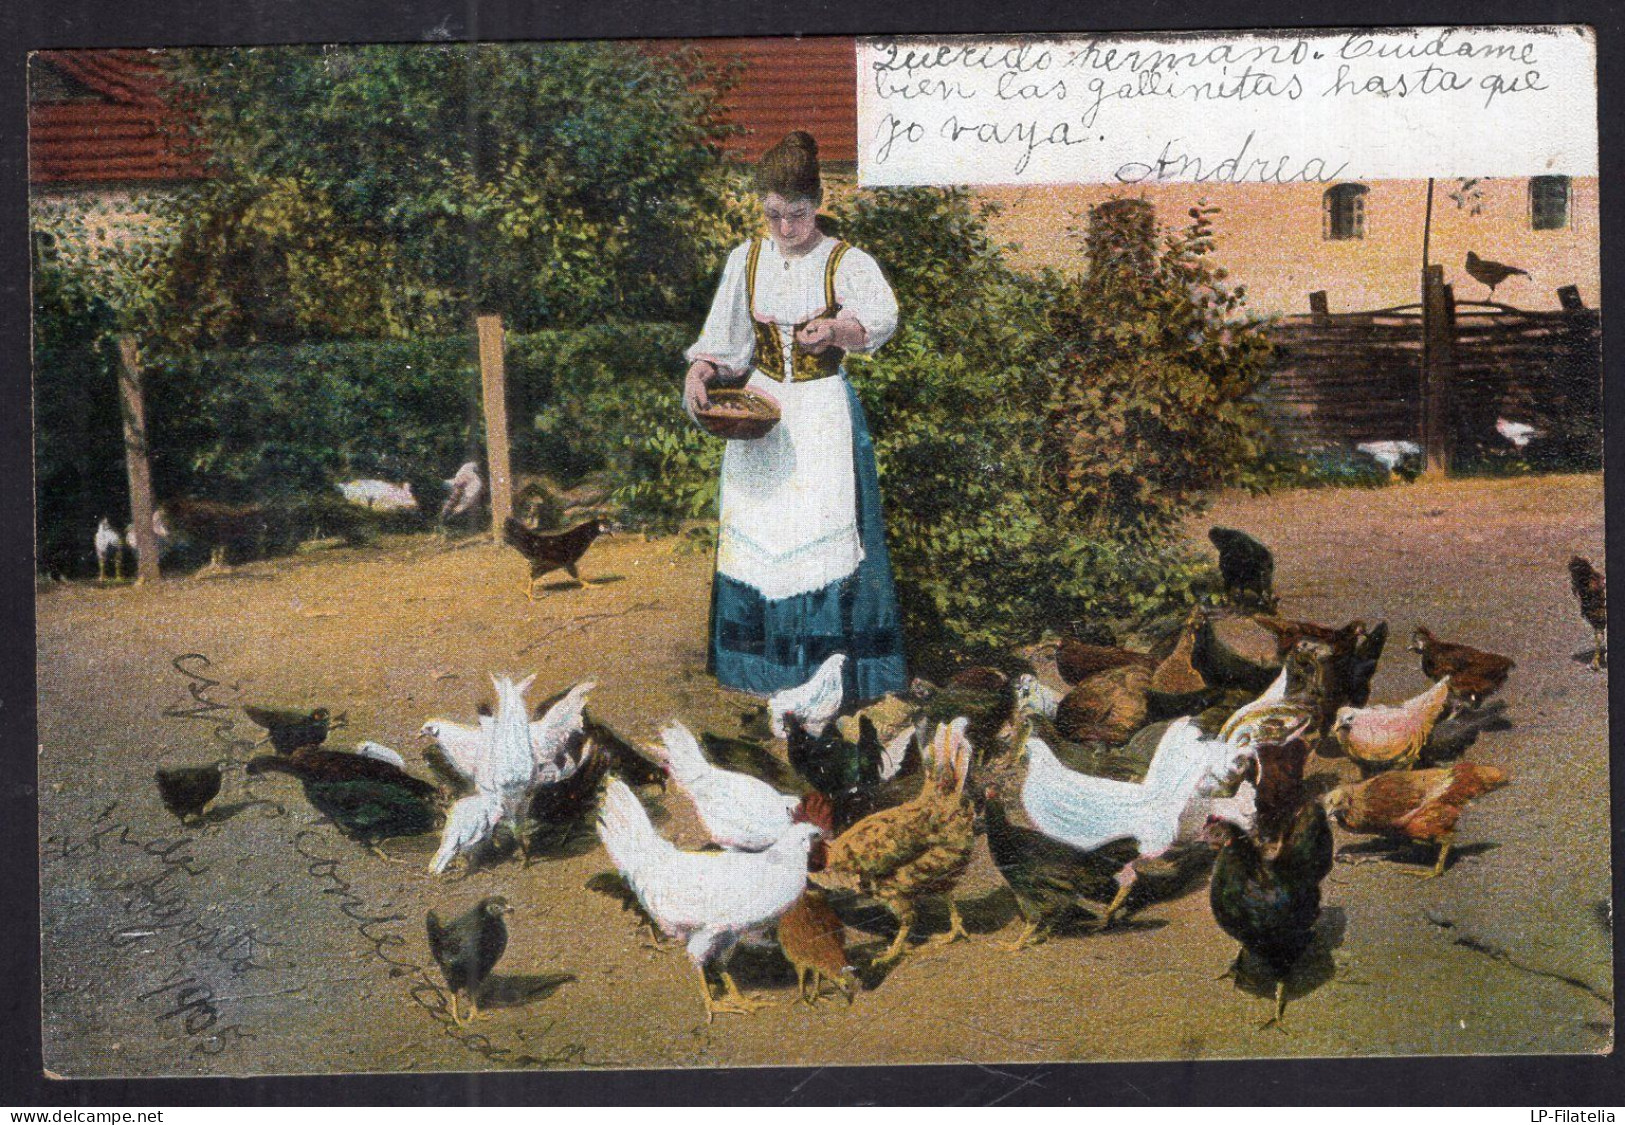 Postcard - 1905 - Woman Feeding Chickens - Femmes